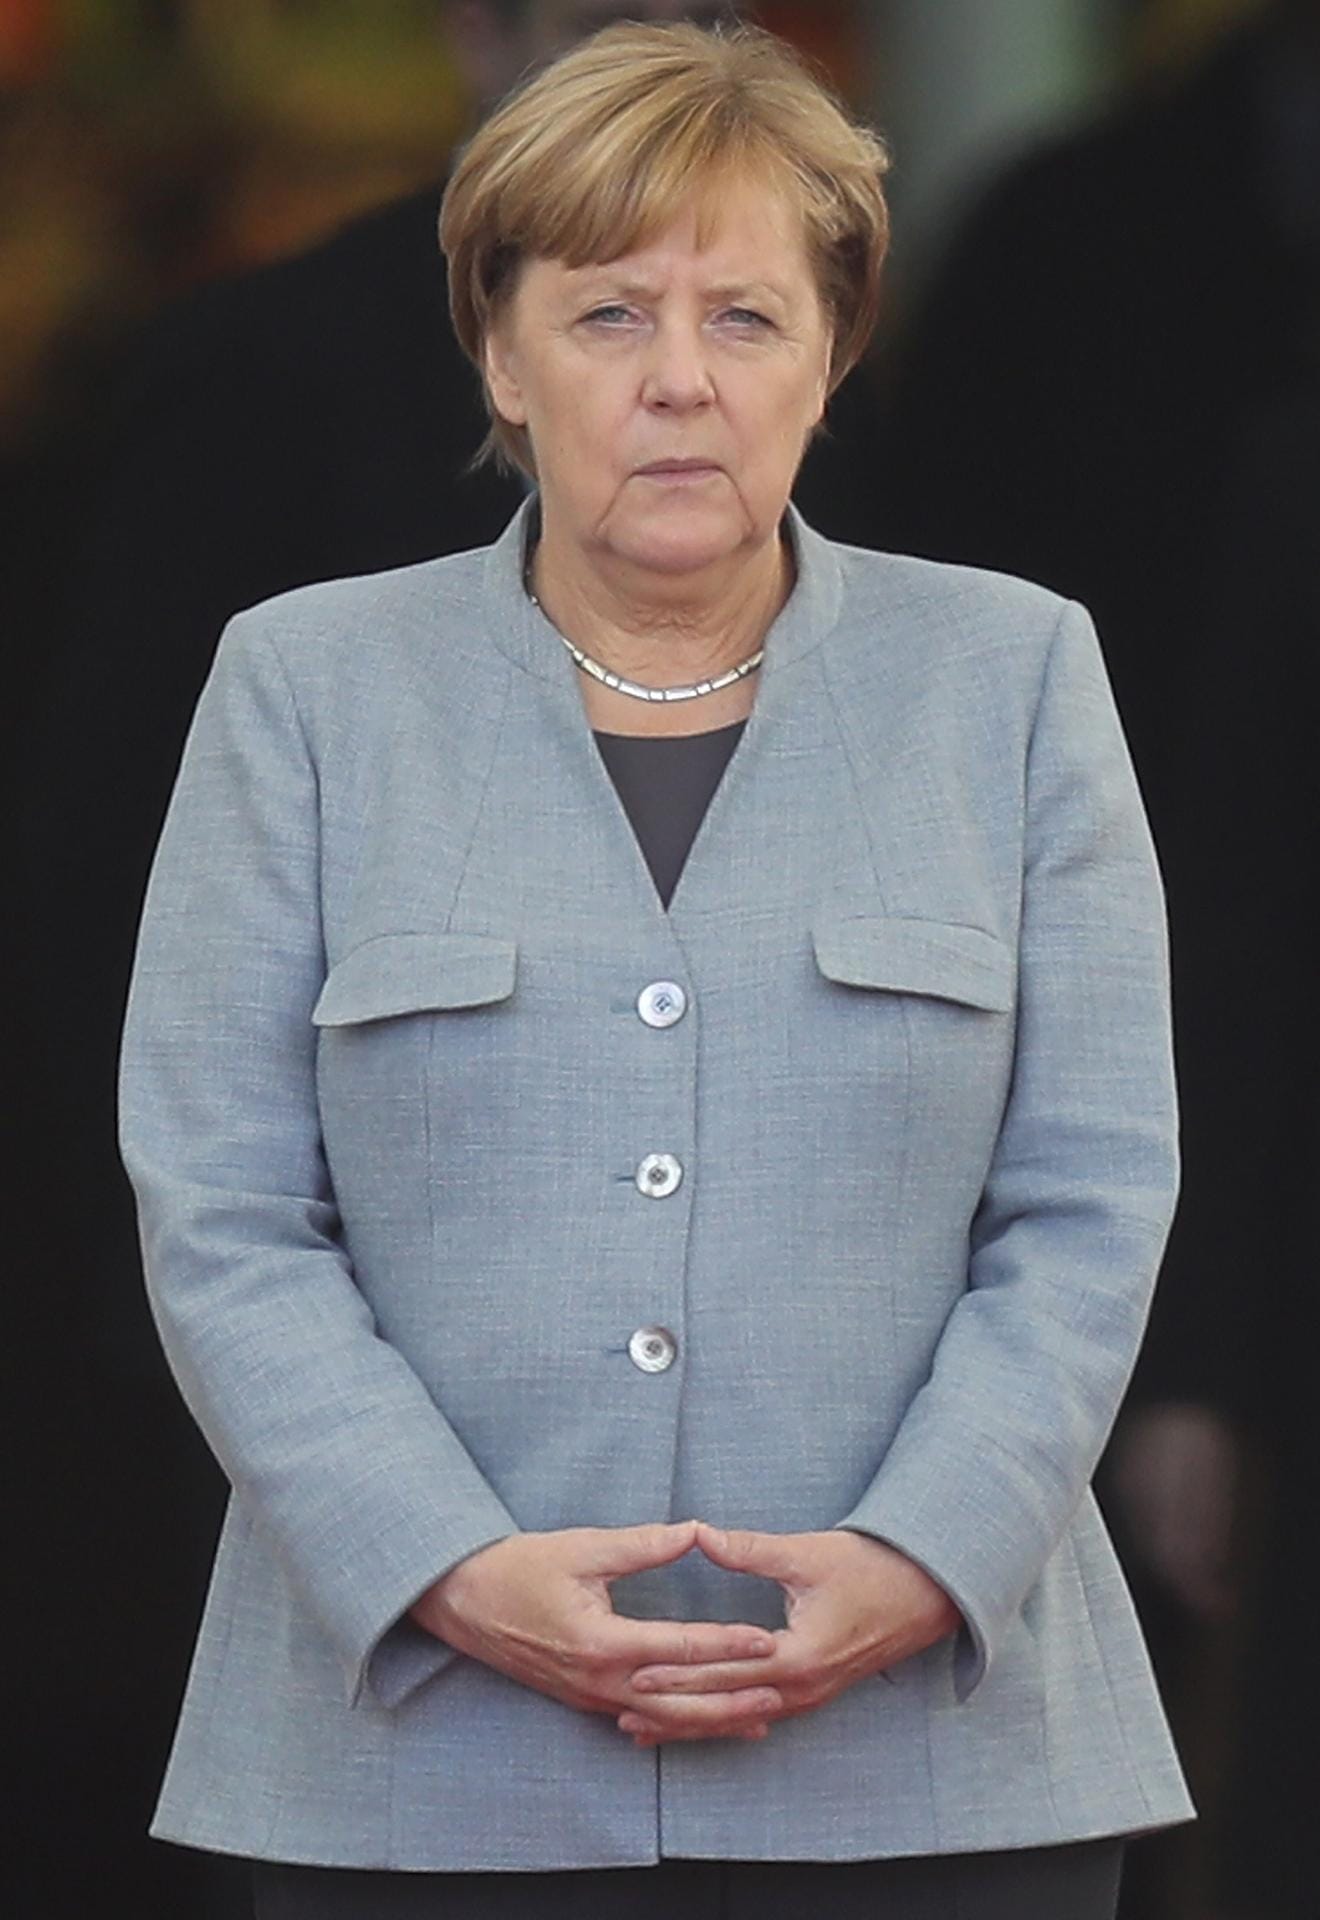 Angela Merkel in Steingrau.